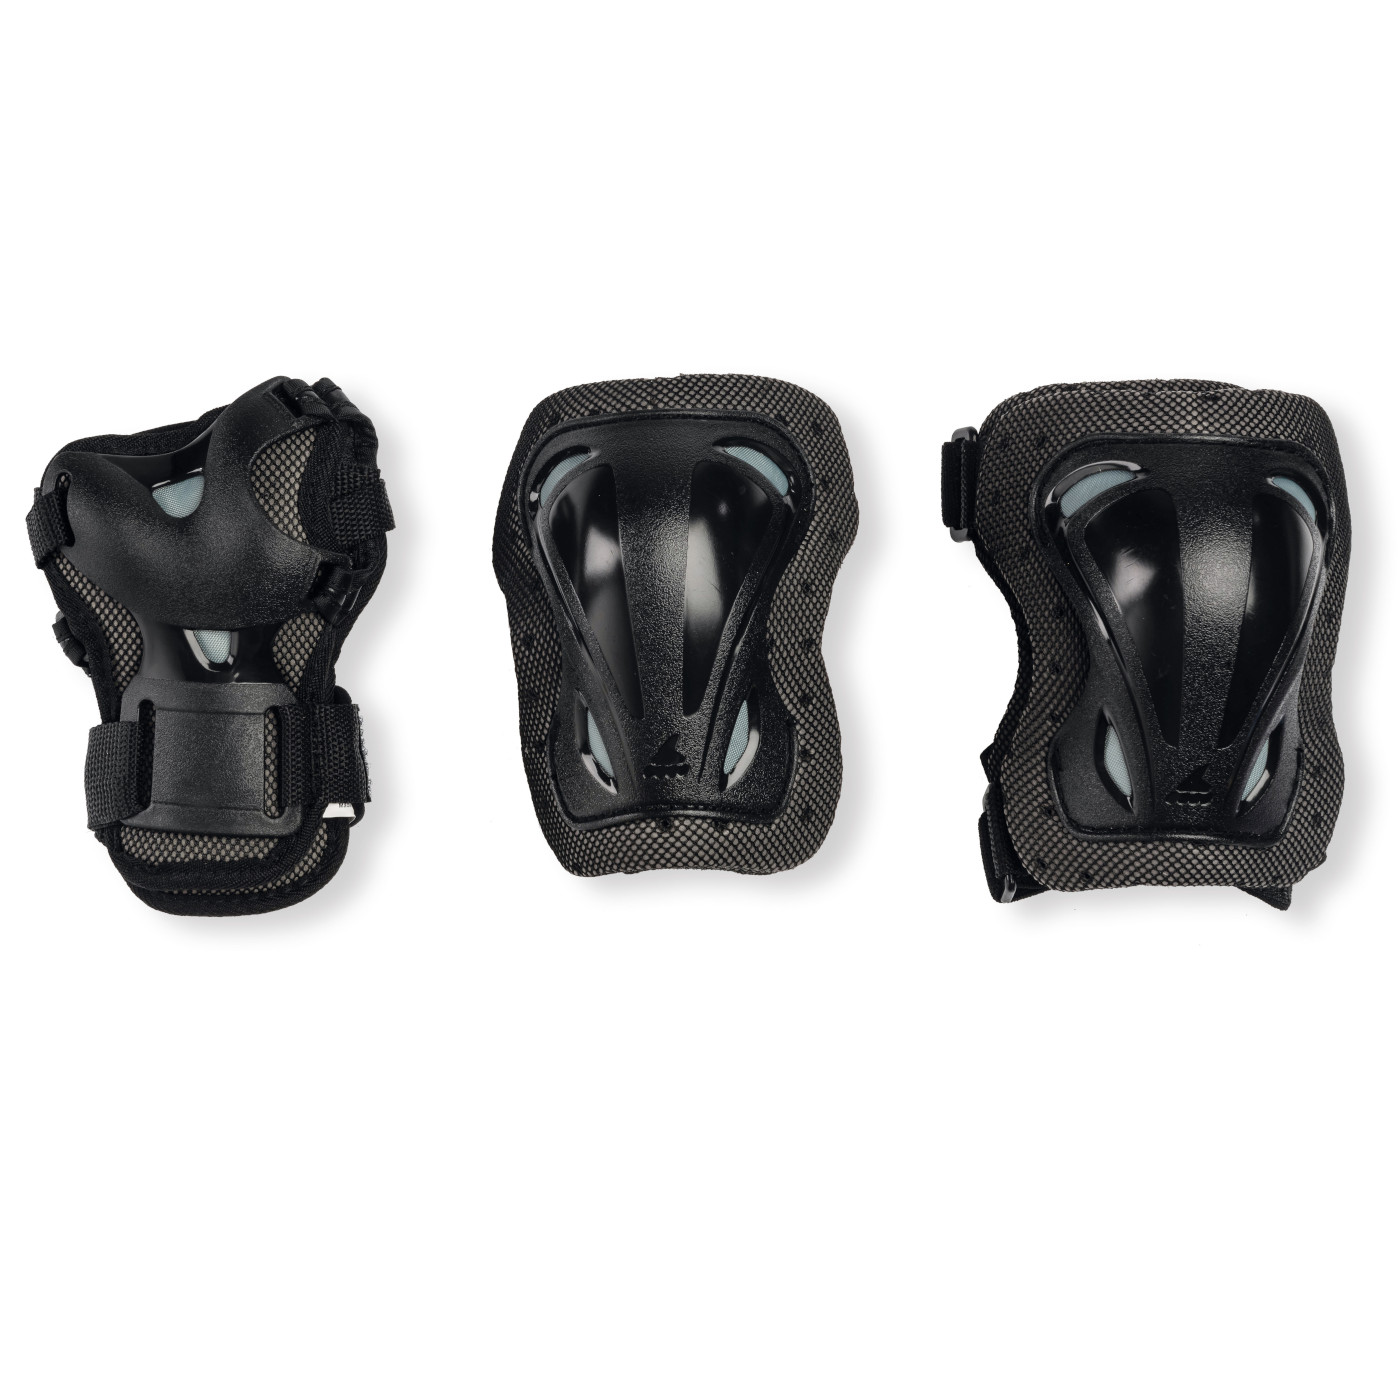 Productfoto van Rollerblade Skate Gear Junior 3 Pack - Protector Set - black